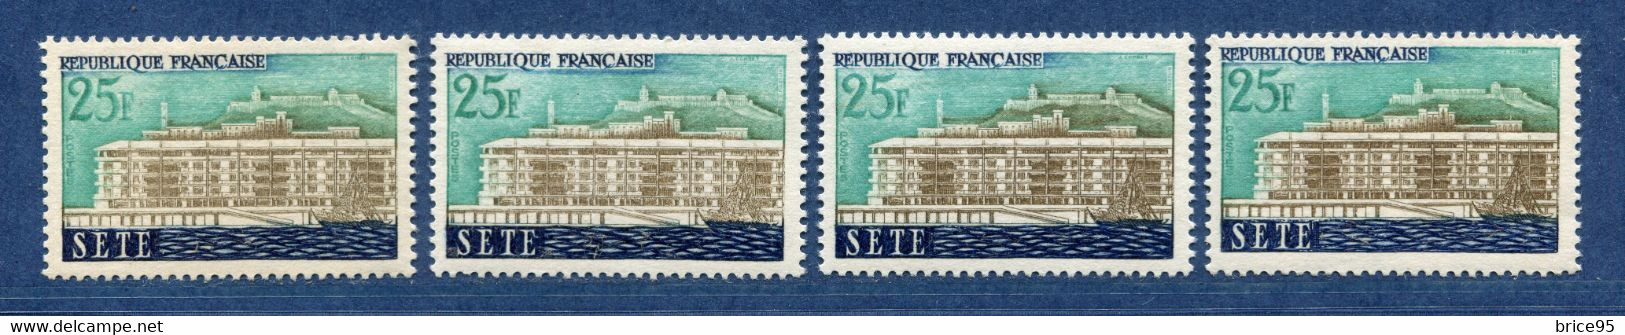 ⭐ France - Variété - YT N° 1155 - Couleurs - Pétouille - Neuf Sans Charnière - 1958 ⭐ - Nuovi